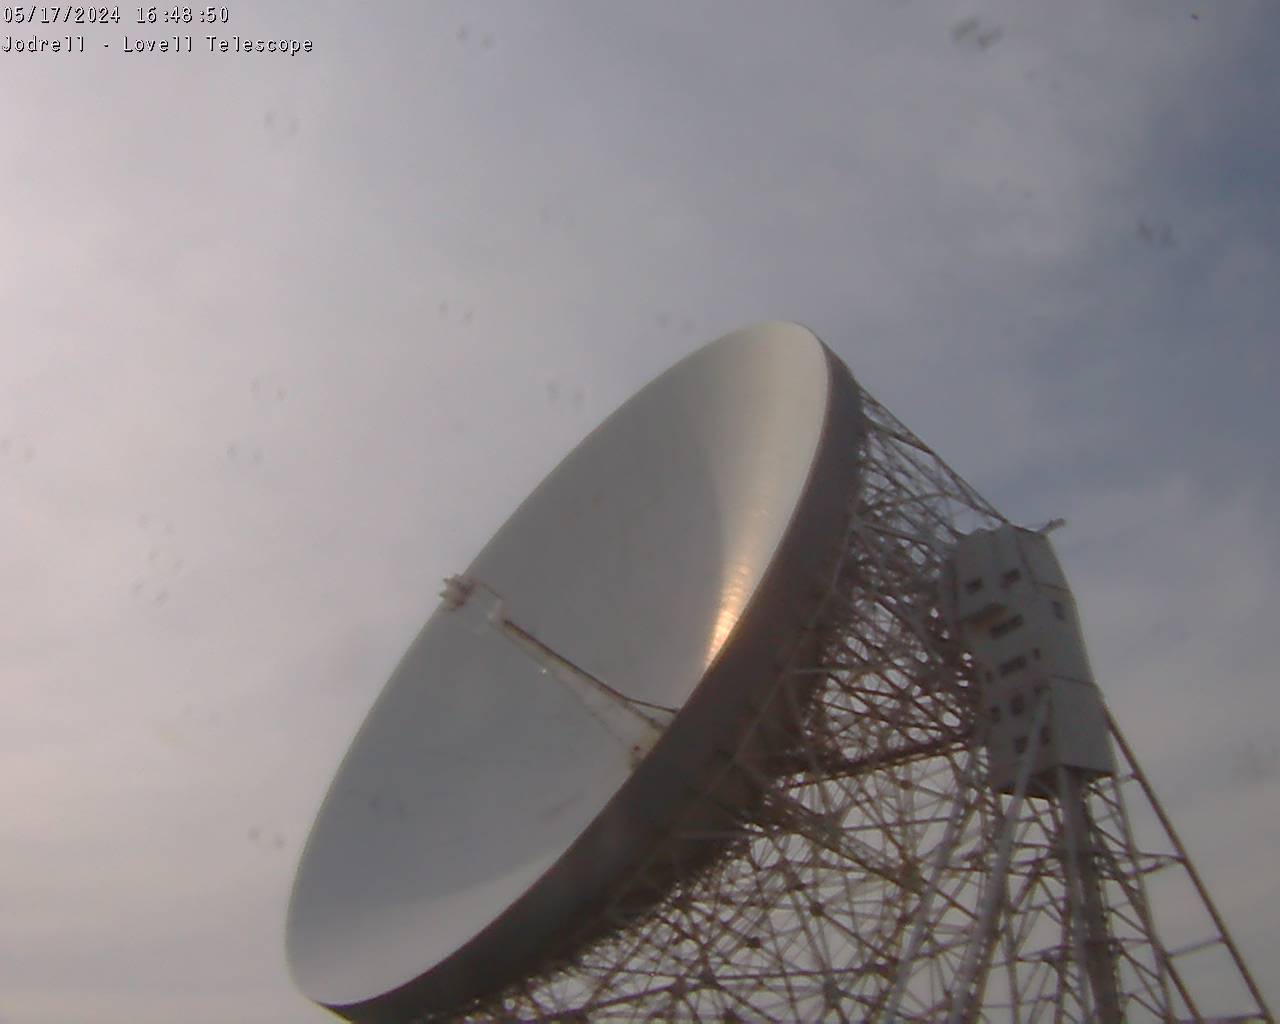 Observatorio Jodrell Bank Sáb. 16:49